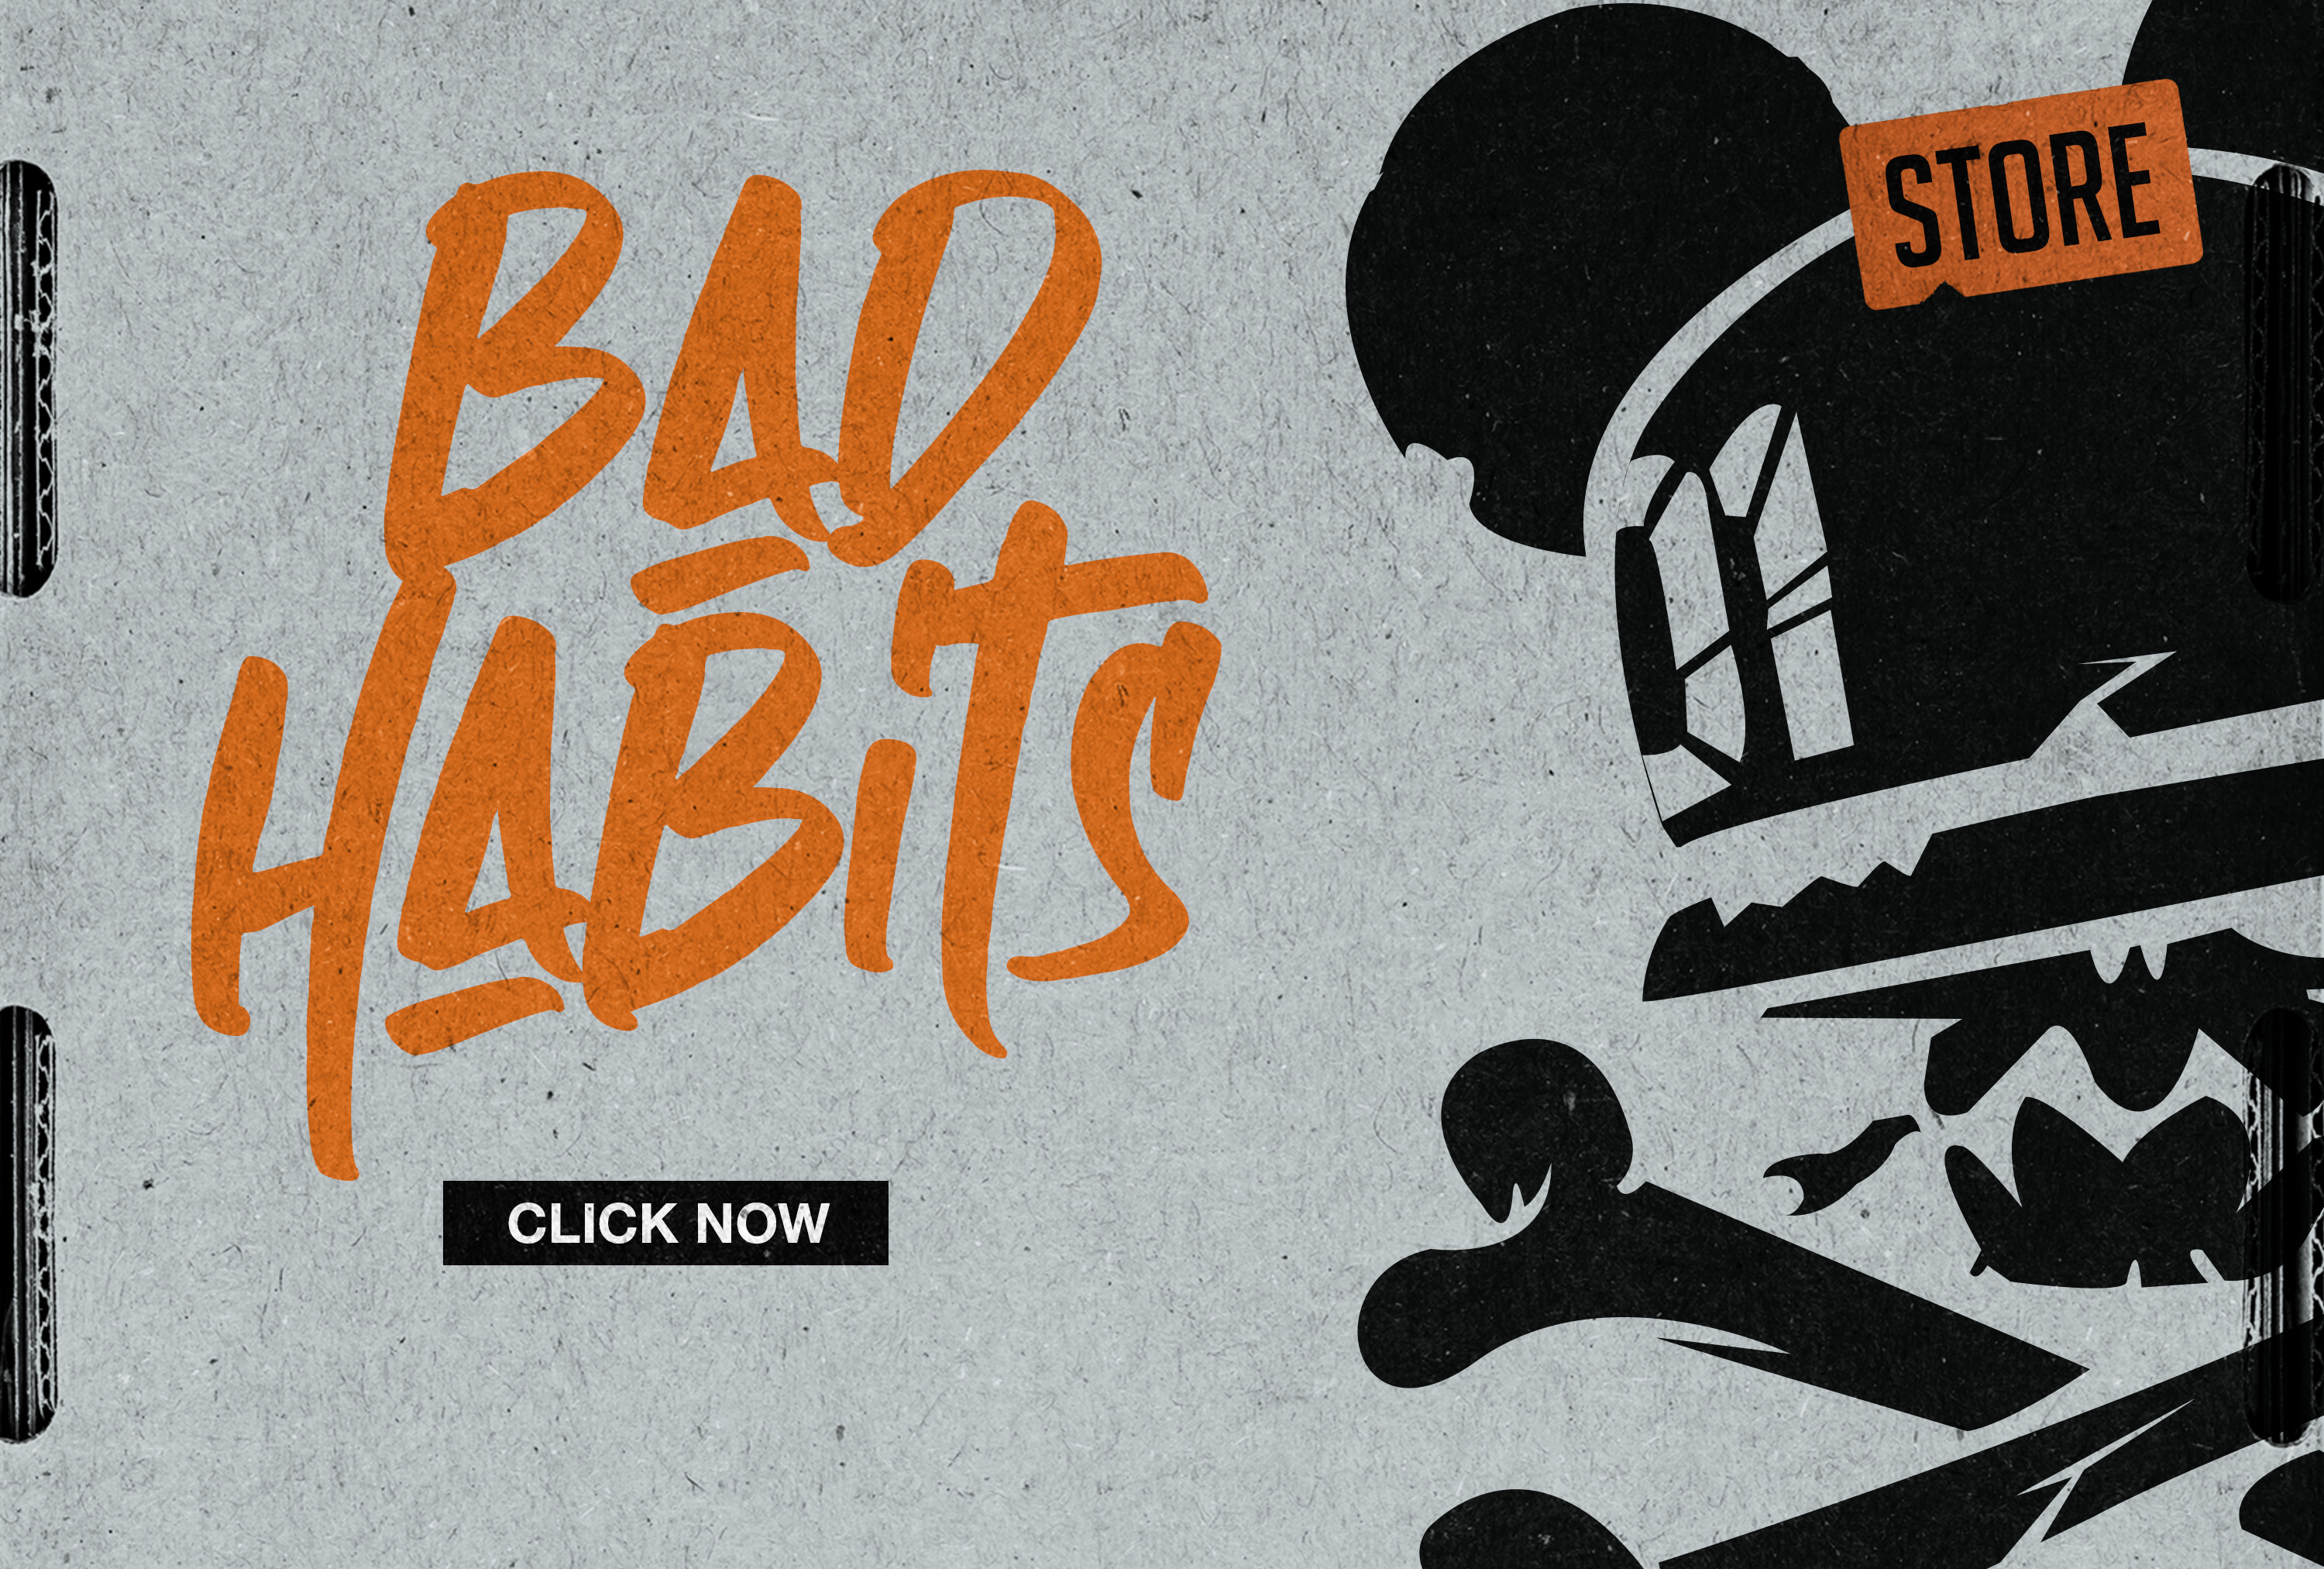 BAD HABITS SHOP